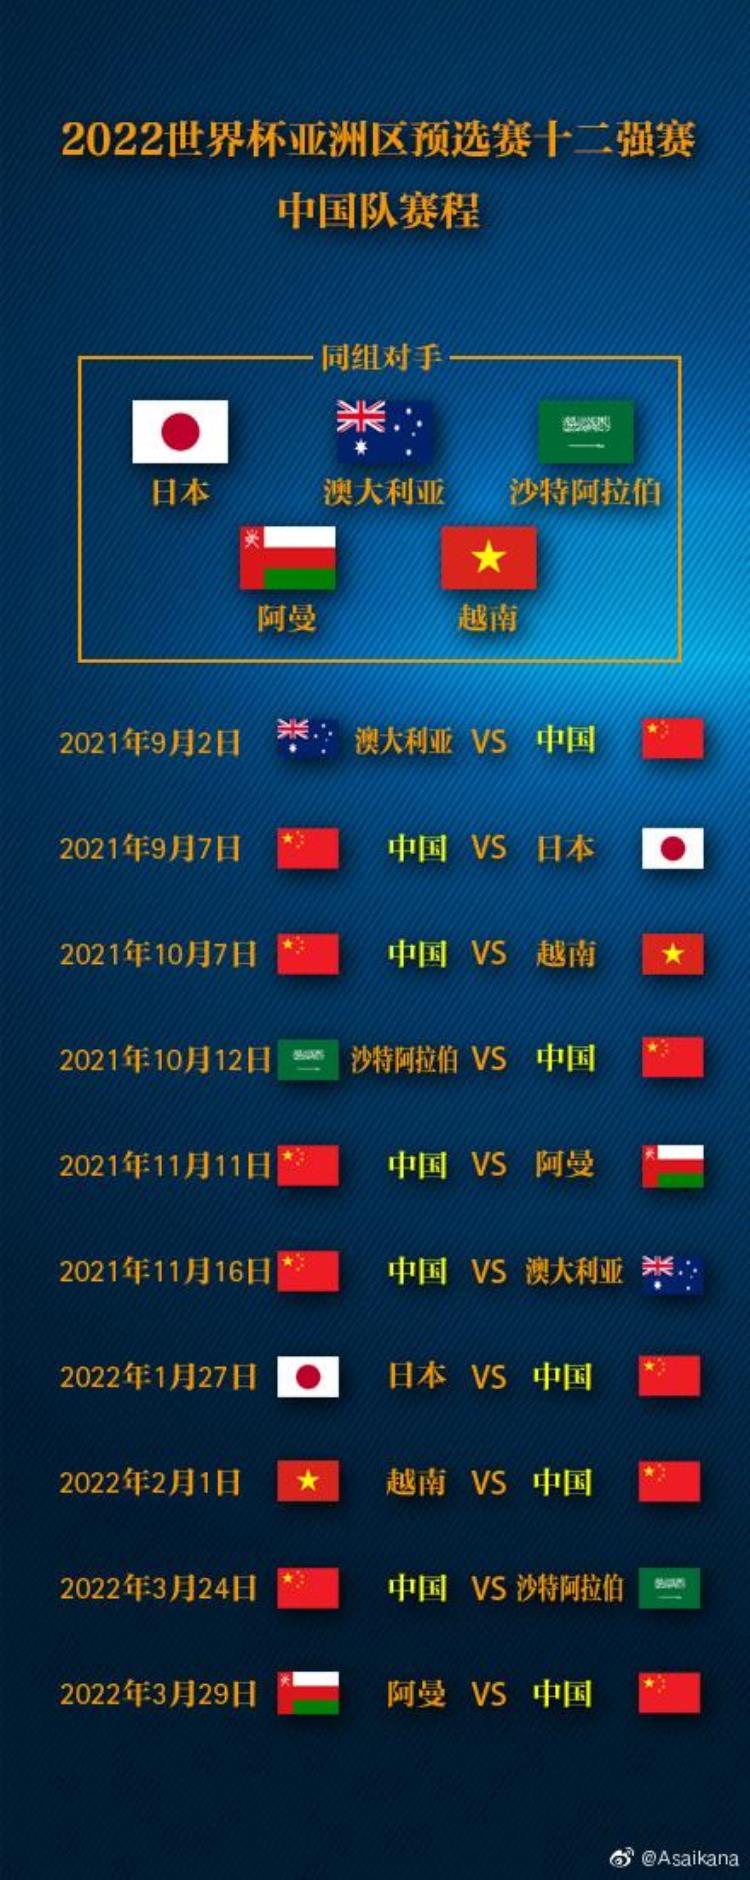 世界杯2022亚洲预选赛12强中国队赛程表,2022中国世界杯预选赛12强赛程表